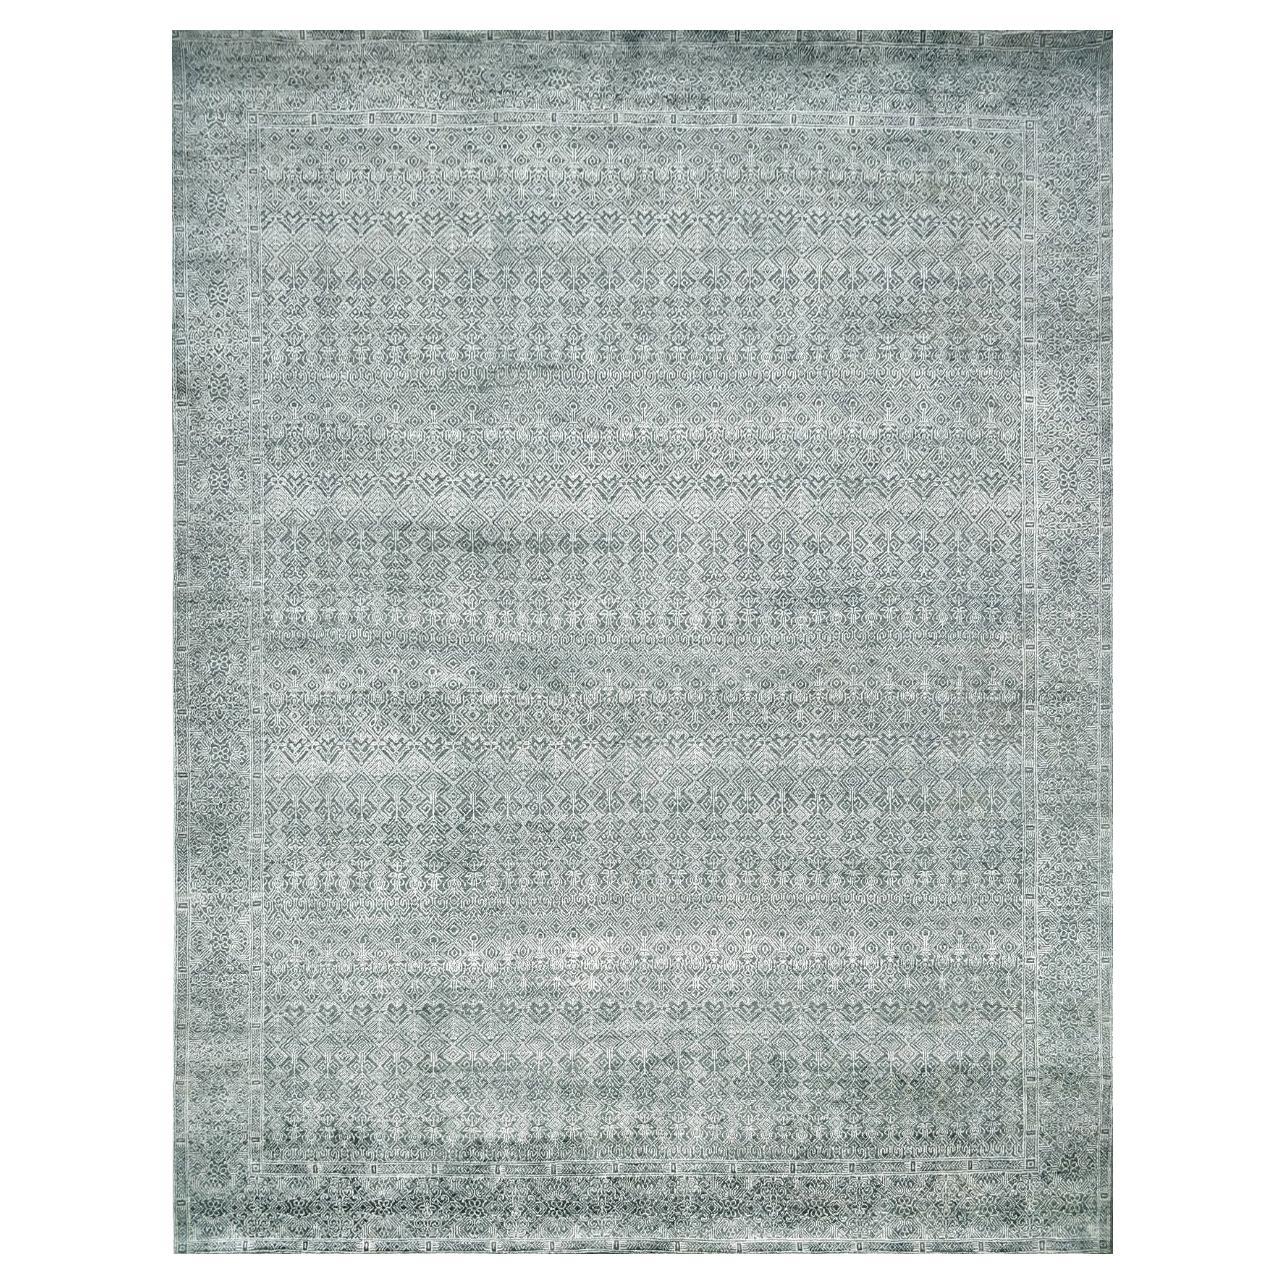 Nouveau tapis moderne abstrait en laine et soie de conception abstraite